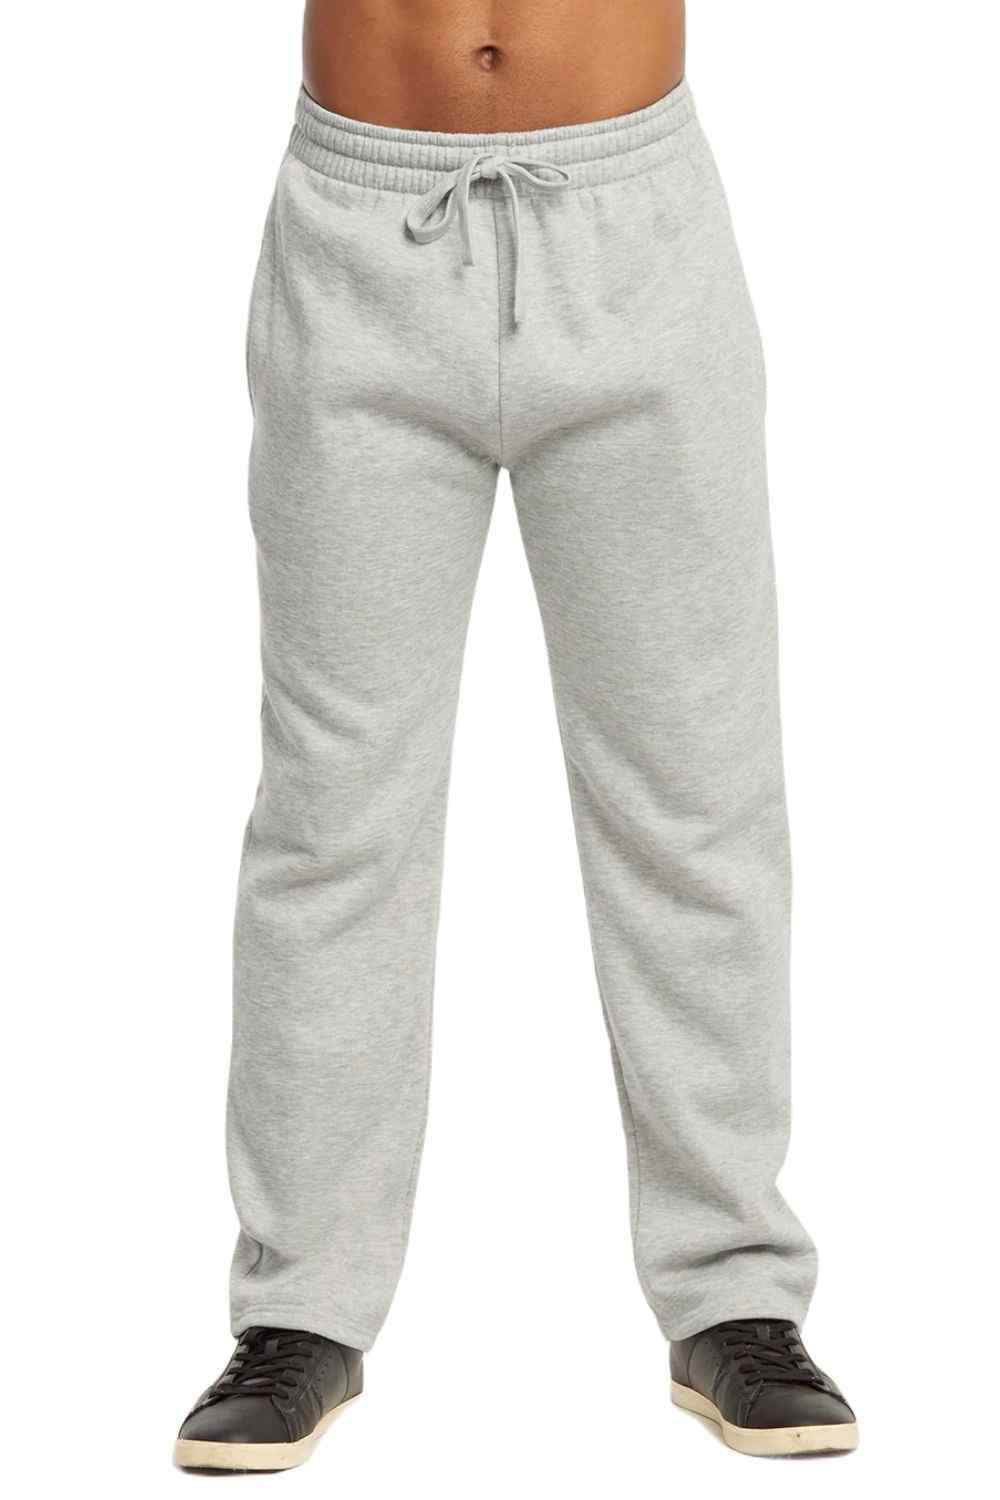 Men's Medium Weight Fleece Open Bottom Sweatpants with Pockets